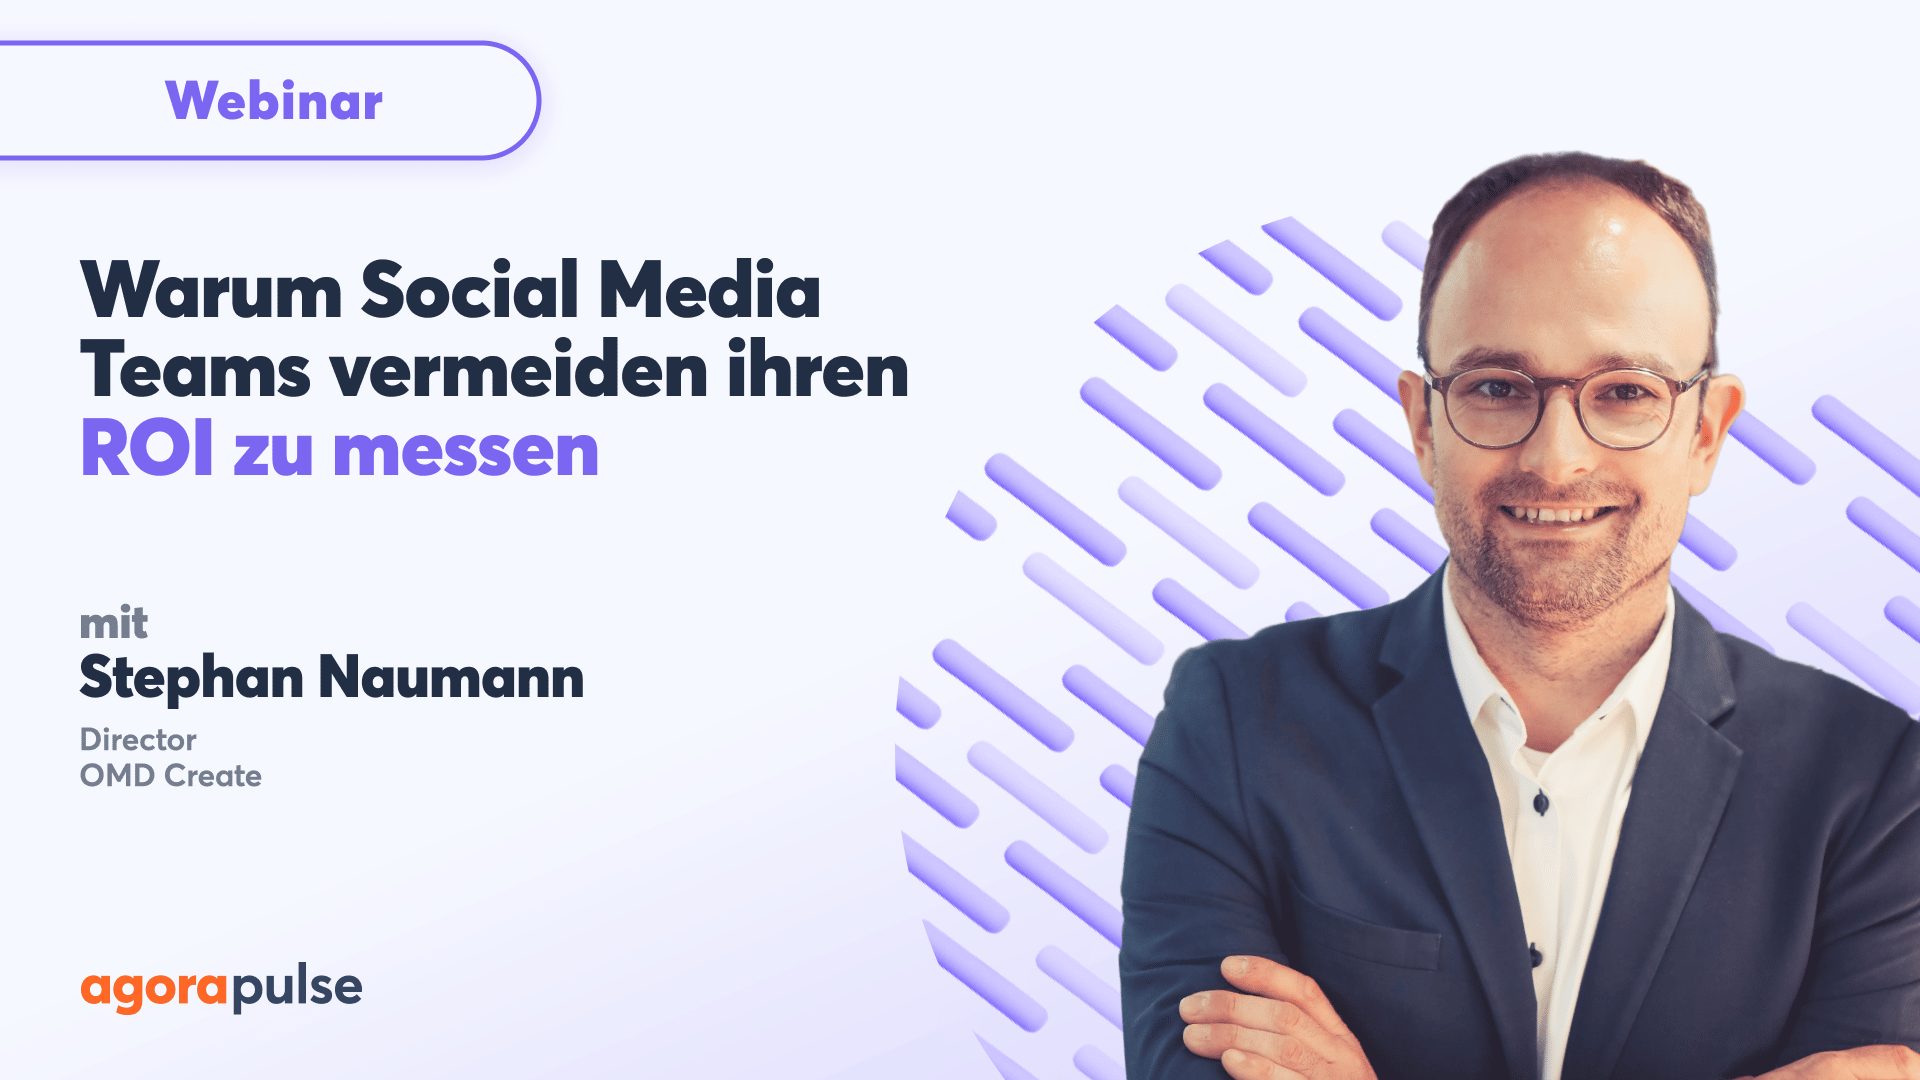 Webinar mit Stephan Naumann über das Thema "Warum Social-Media-Teams vermeiden ihren ROI zu messen"